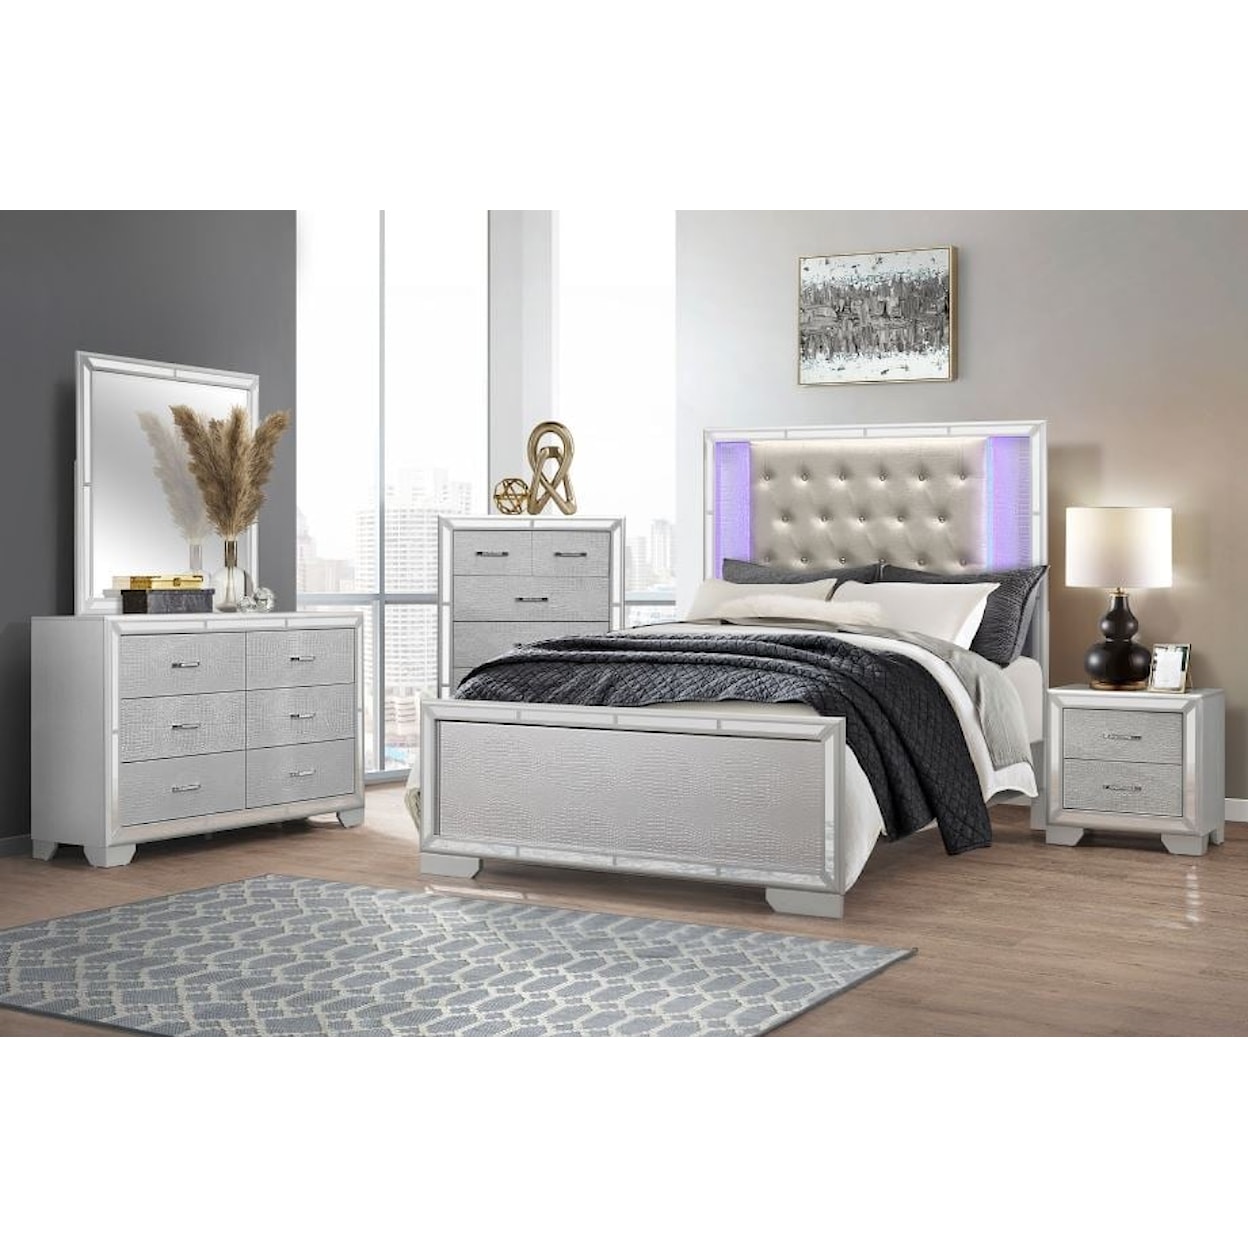 Homelegance Furniture Aveline 5-Piece Queen Bedroom Set